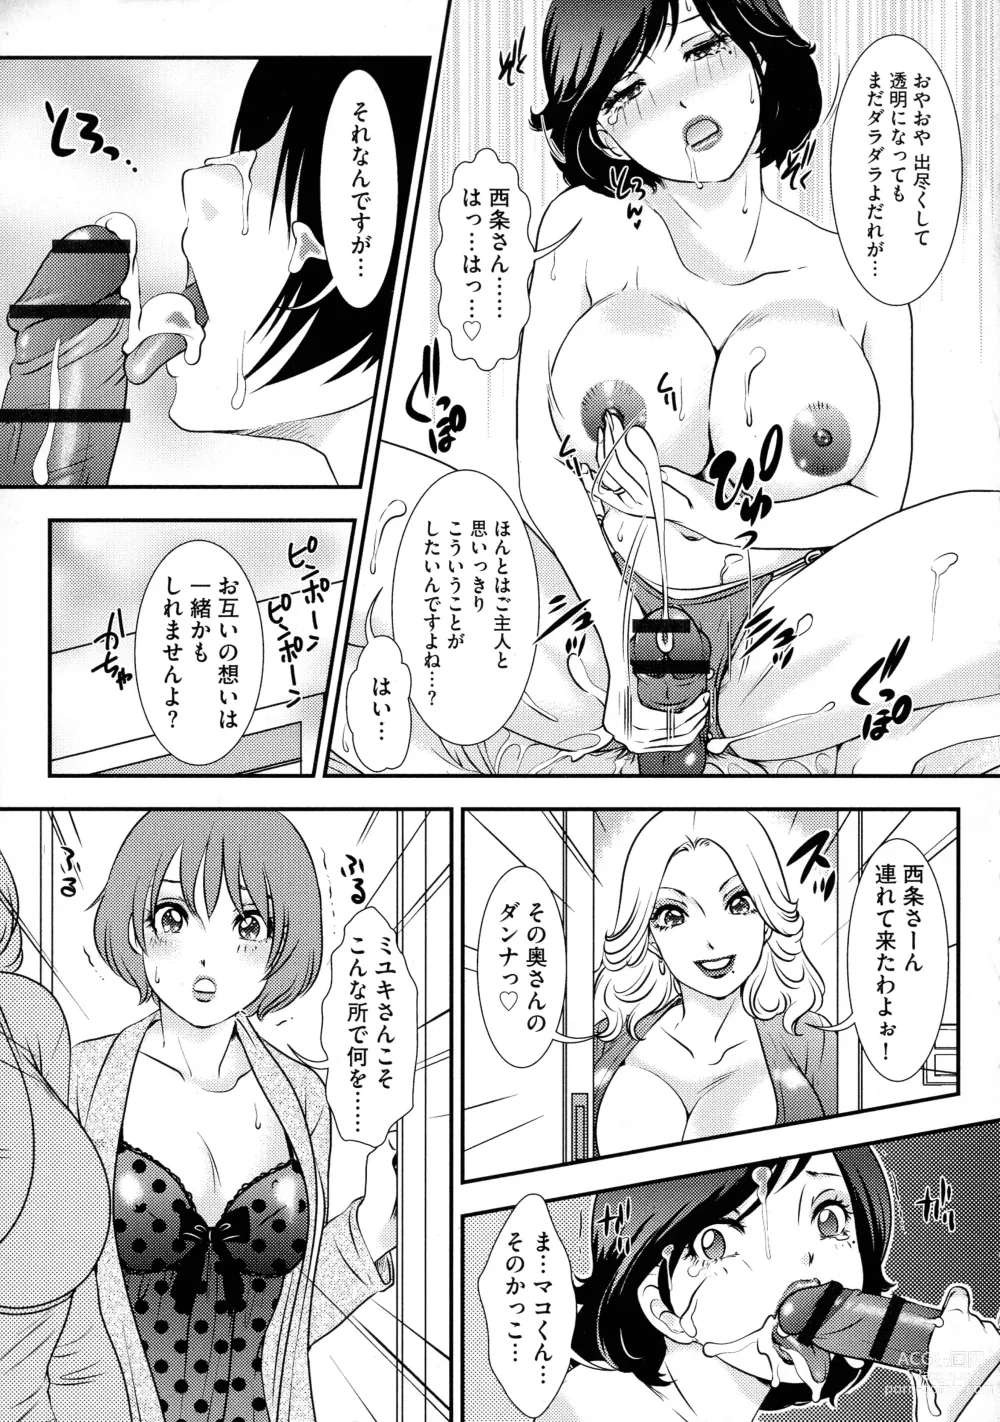 Page 177 of manga Shemale Heaven!